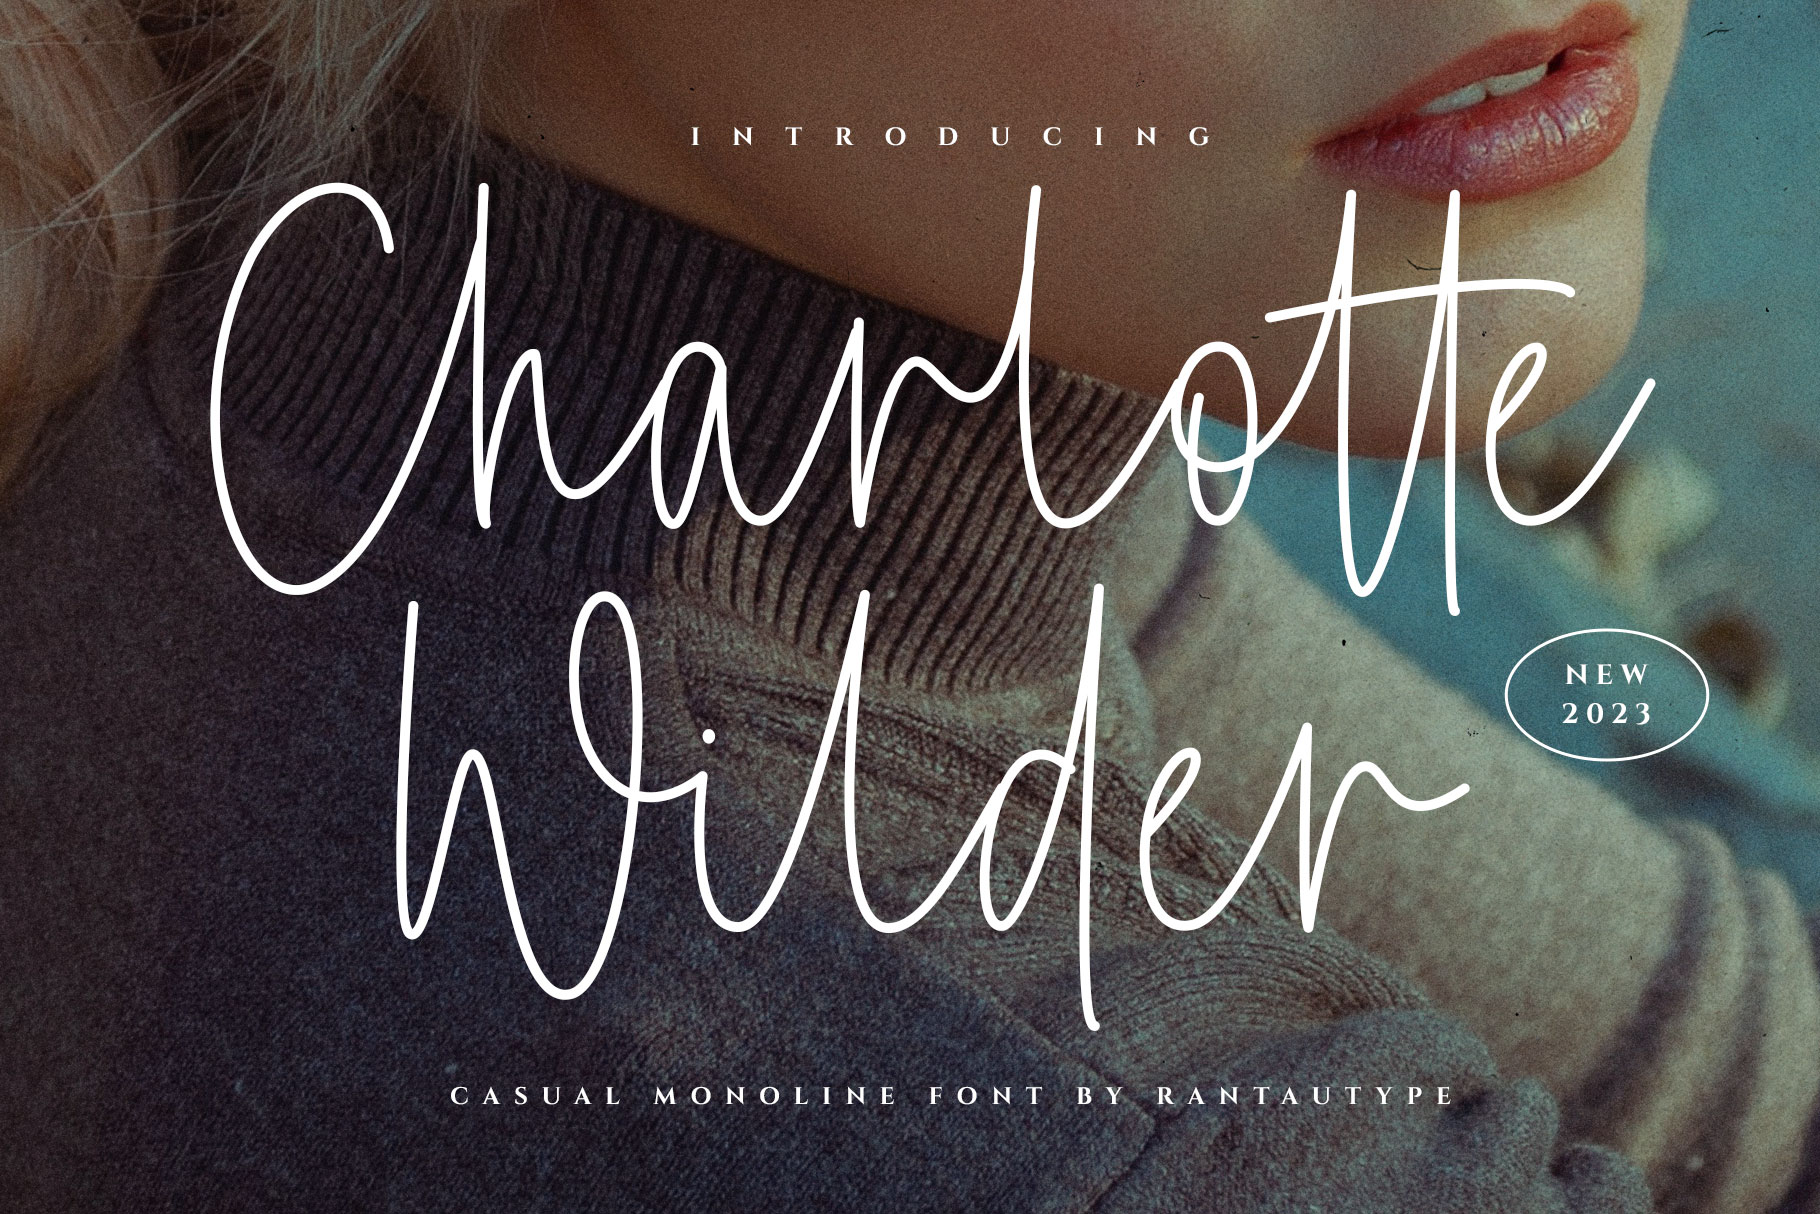 Charlotte Wilder